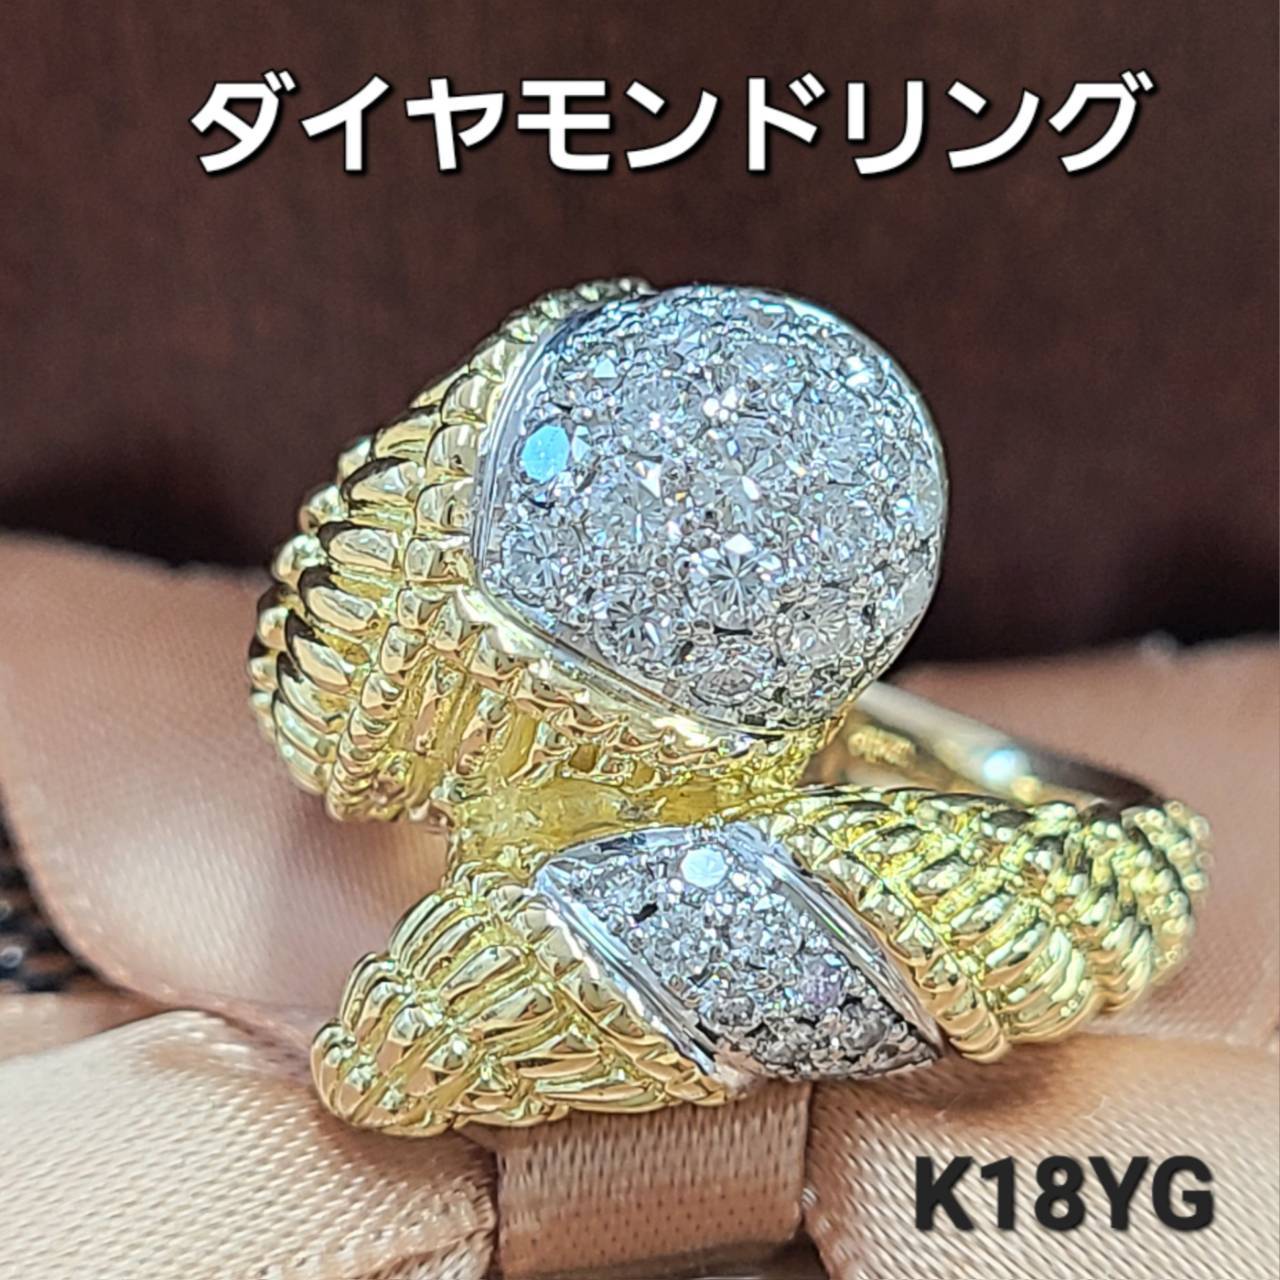 まるで 1ct ボリュームある輝き 天然 ダイヤモンド K18 YG イエローゴールド 18金 ハグリング 指輪 4月誕生石 【鑑別書付】